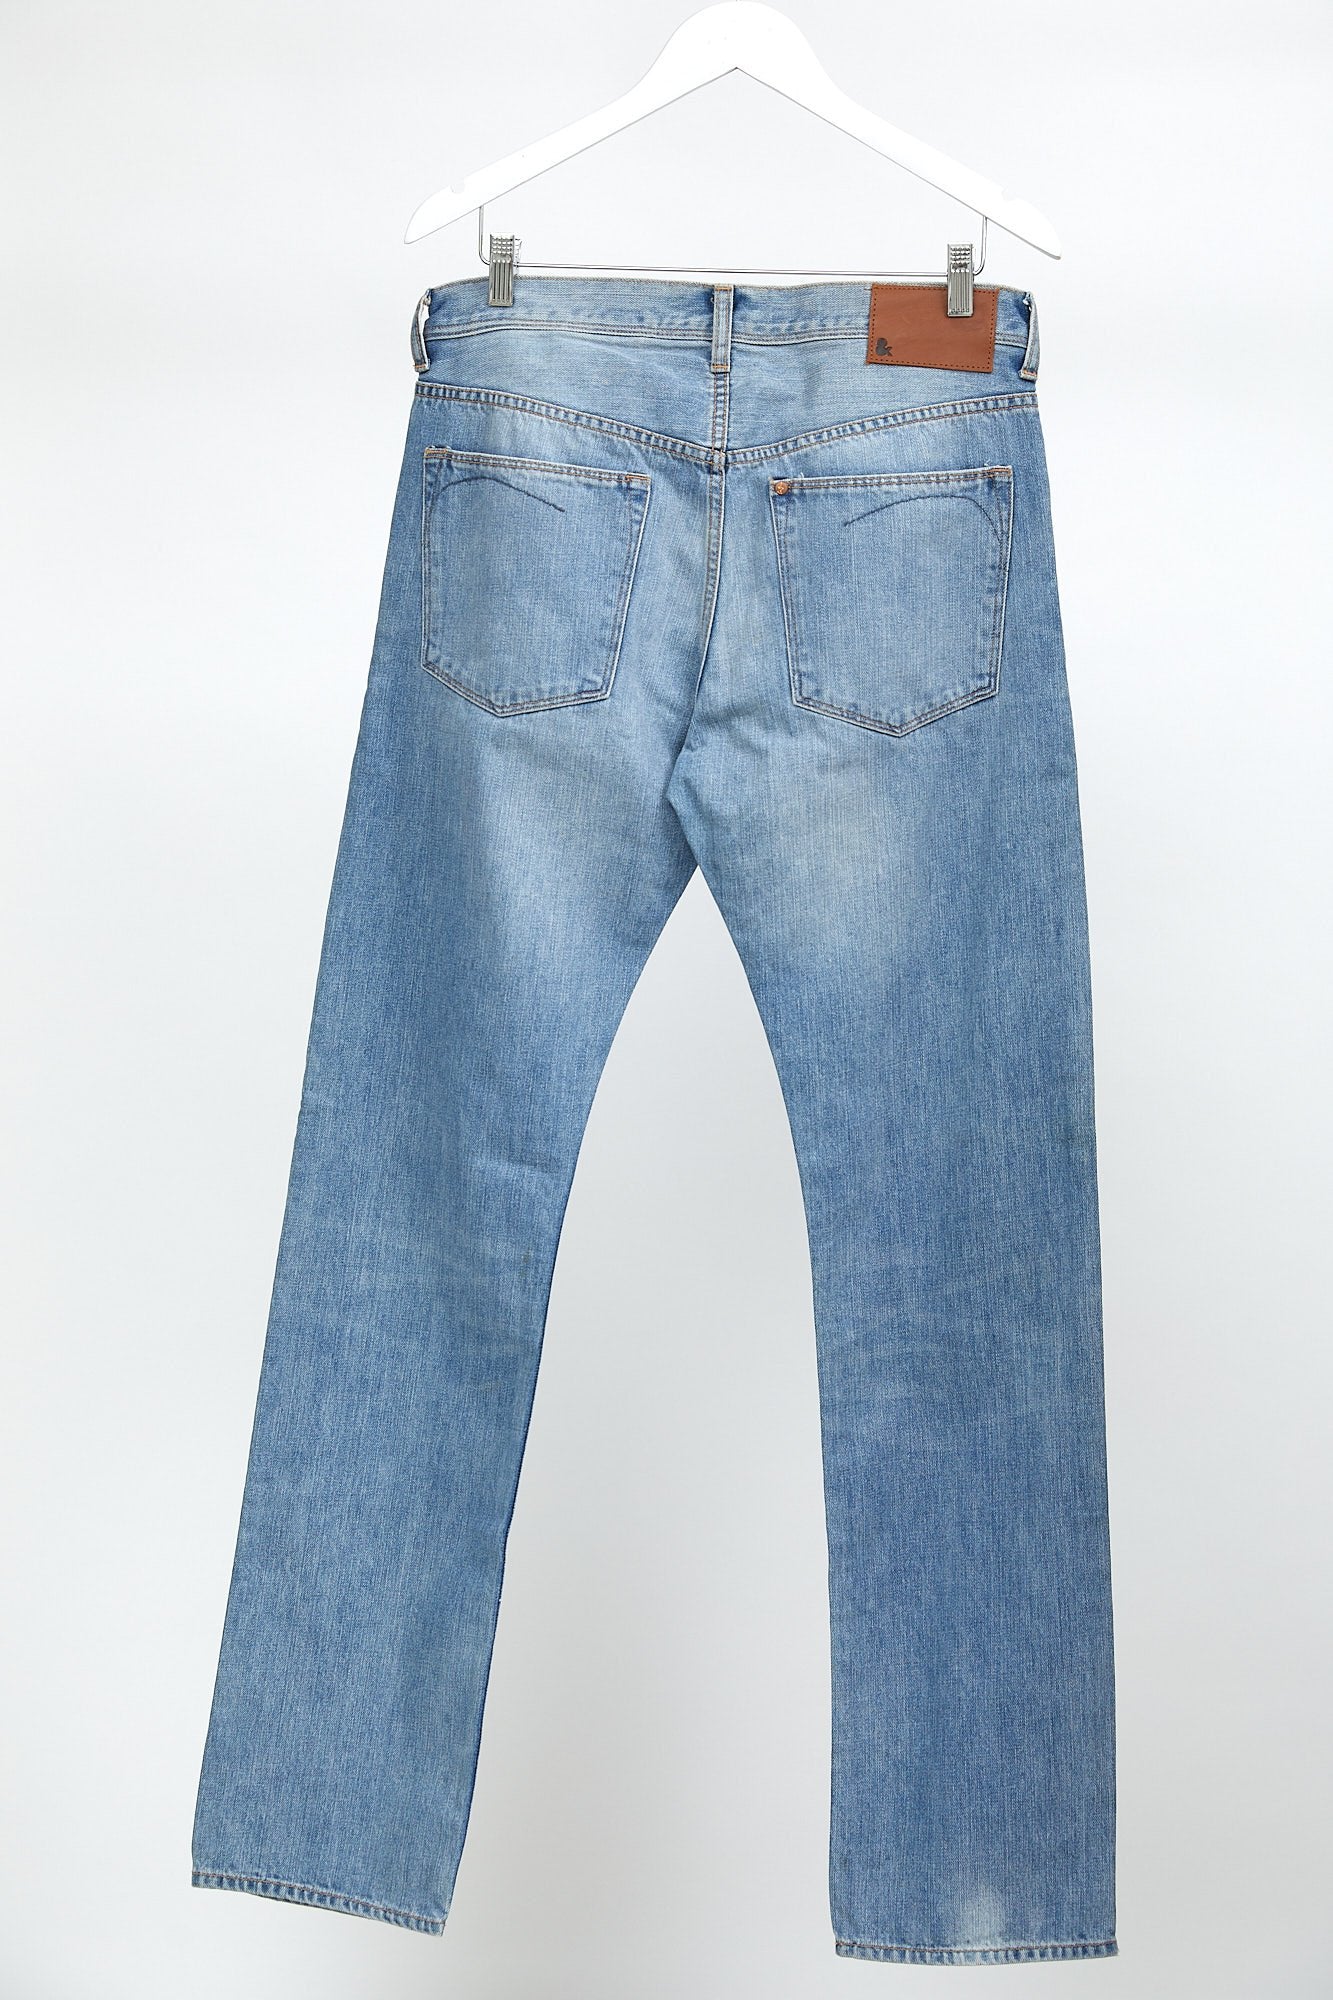 Light Wash Blue H&M Straight Slim Fit Jean: W32 L32